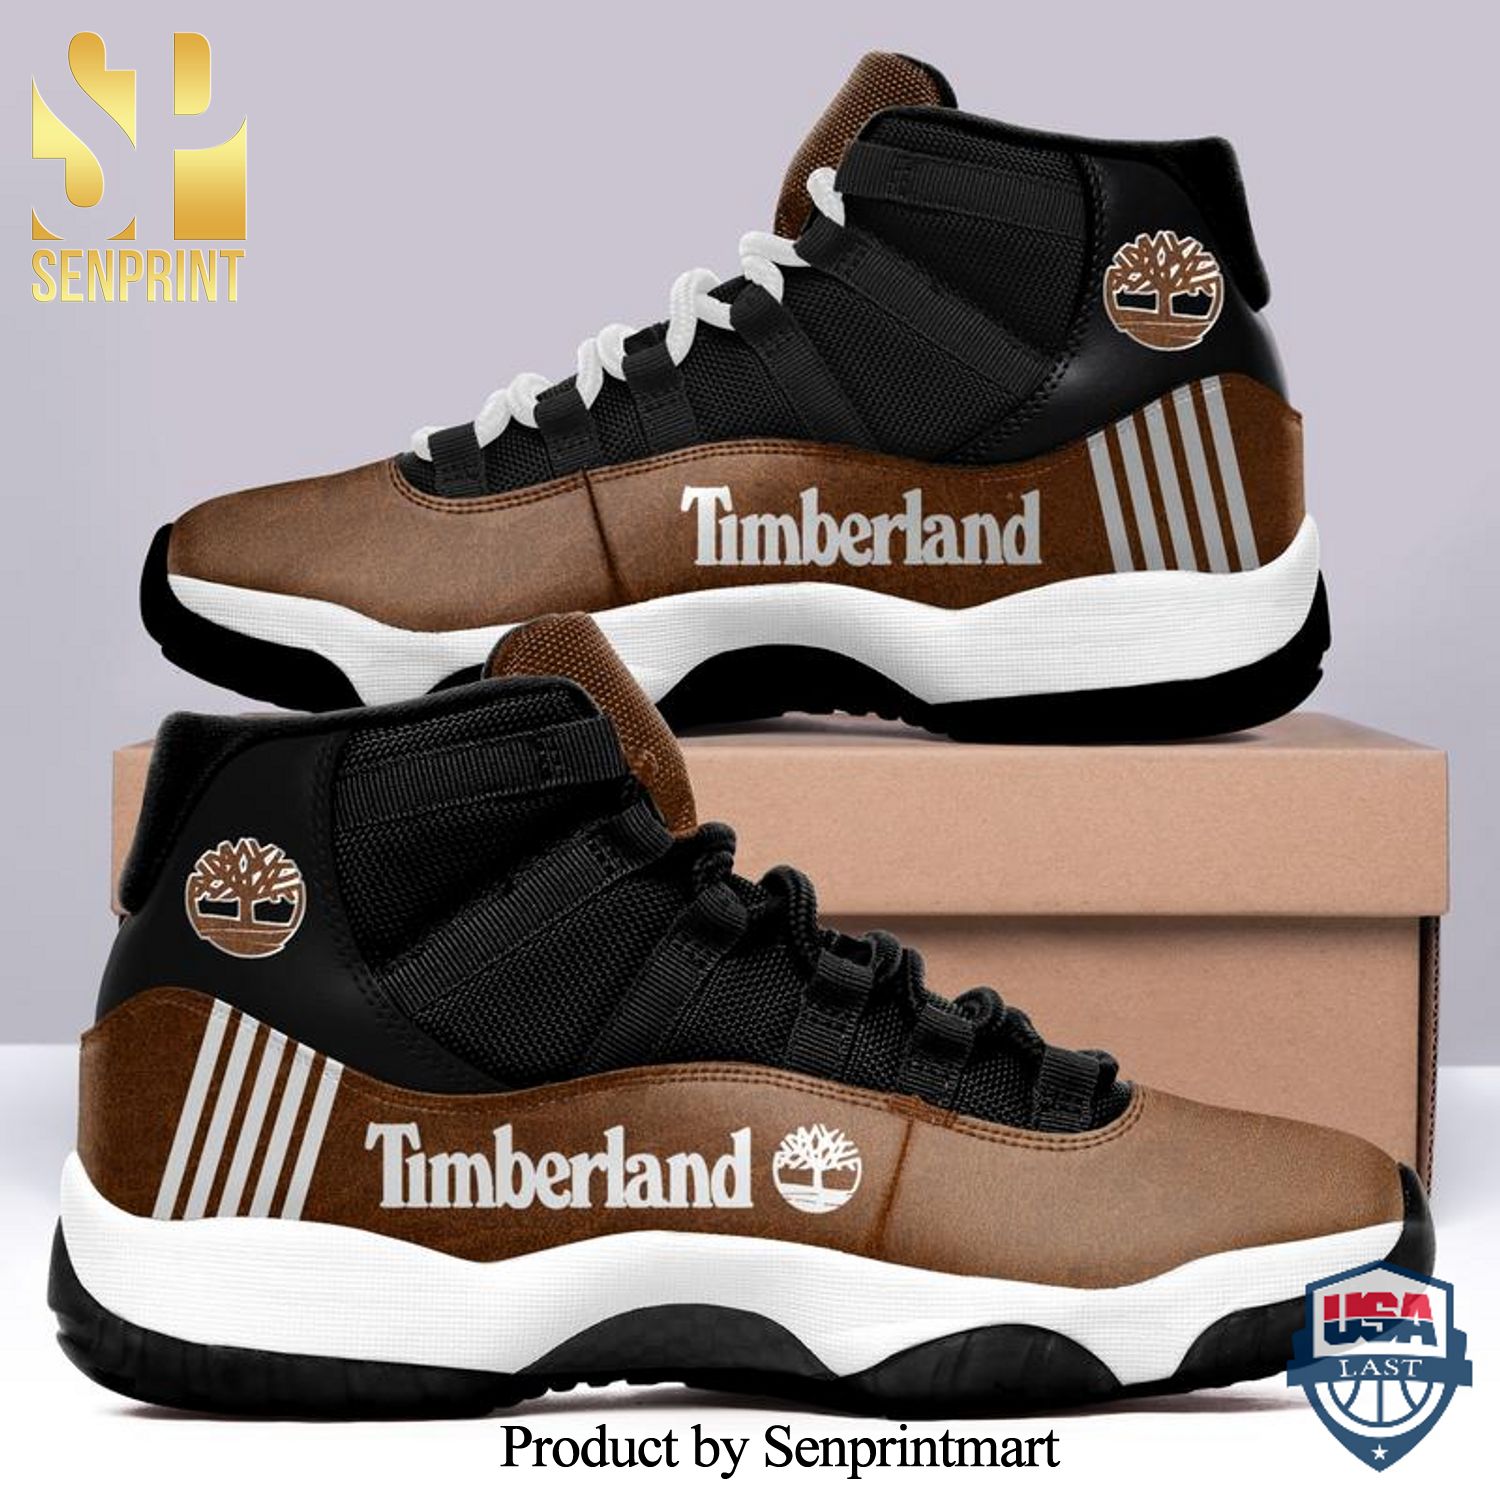 Timberland white line sneaker Combo Full Printing Air Jordan 11